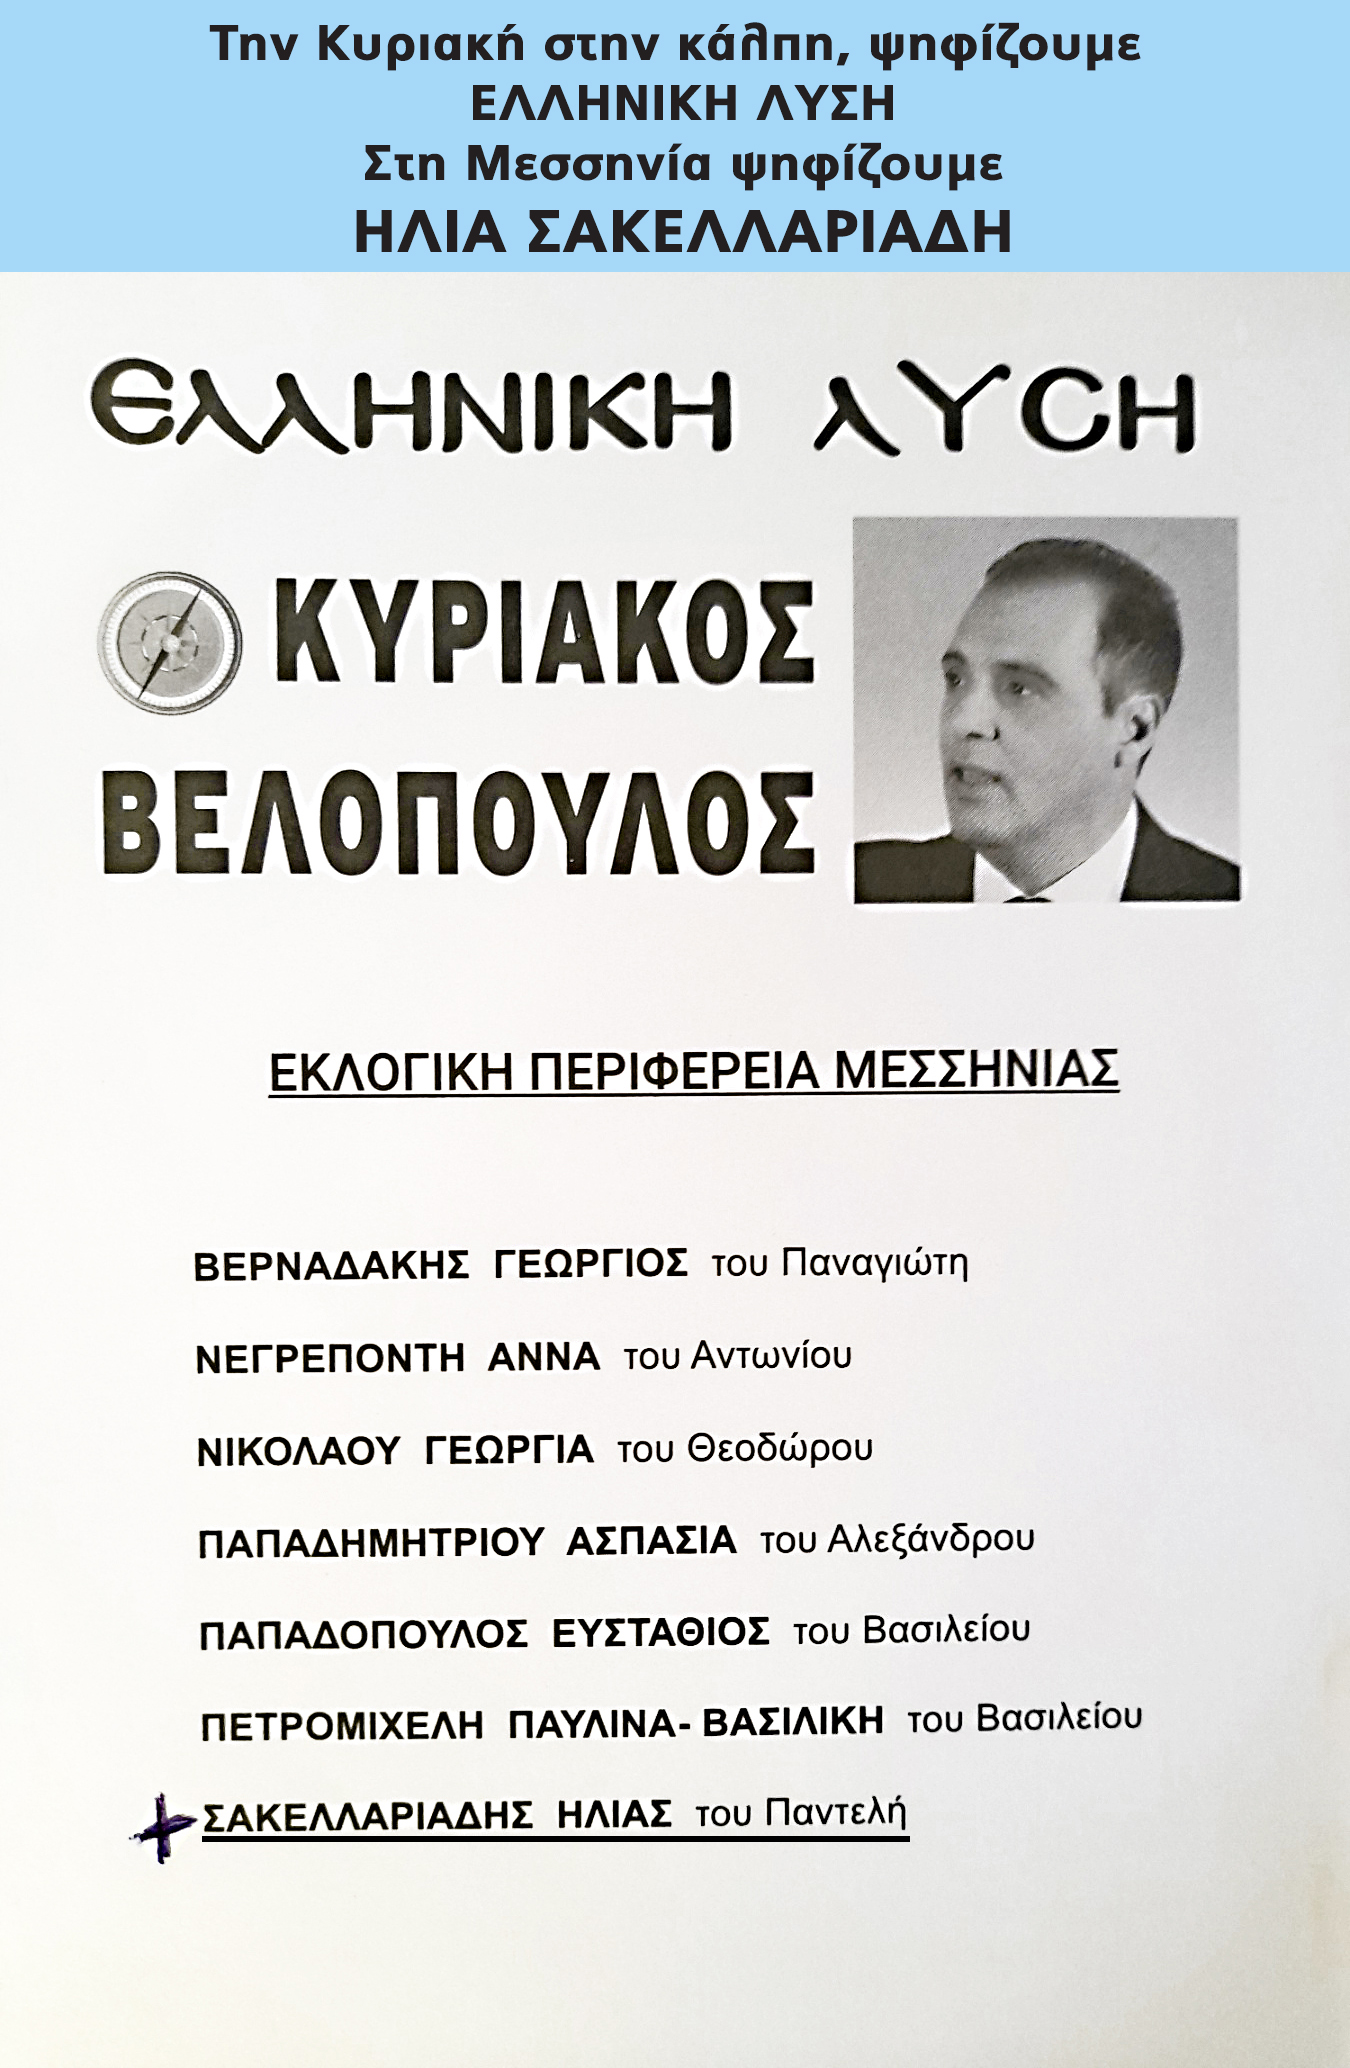 ηλίας σακελλαριάδης υποψήφιος βουλευτής μεσσηνίας με την ελληνικη λυση - η σχέση μου με τη μεσσηνία 10